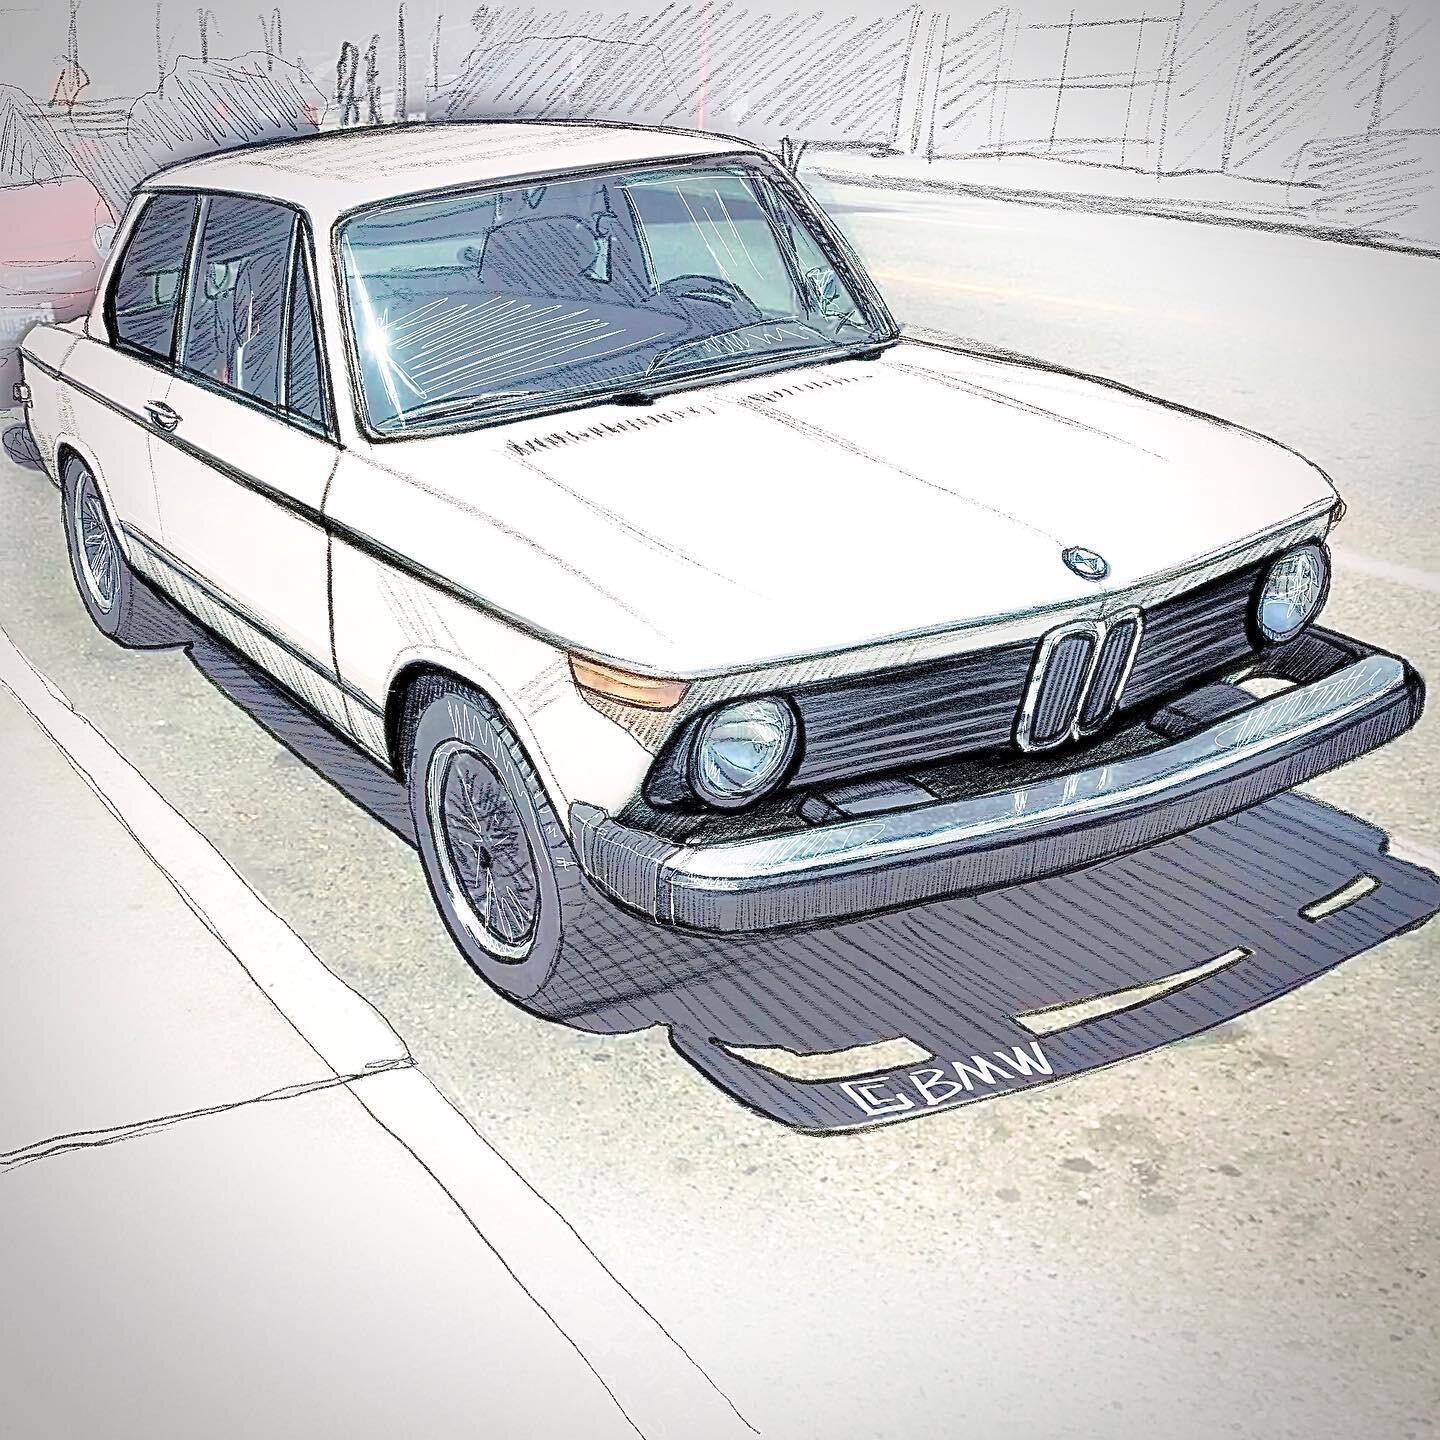 BMW 1600-02  #bmwclub #bmw3series #bmwclassic #bmwfan #classiccars #bmwlife #carsketch #carart #carartwork #cararts #carartistcommunity  #cartisgraphy #vintagecars #vintagebmw